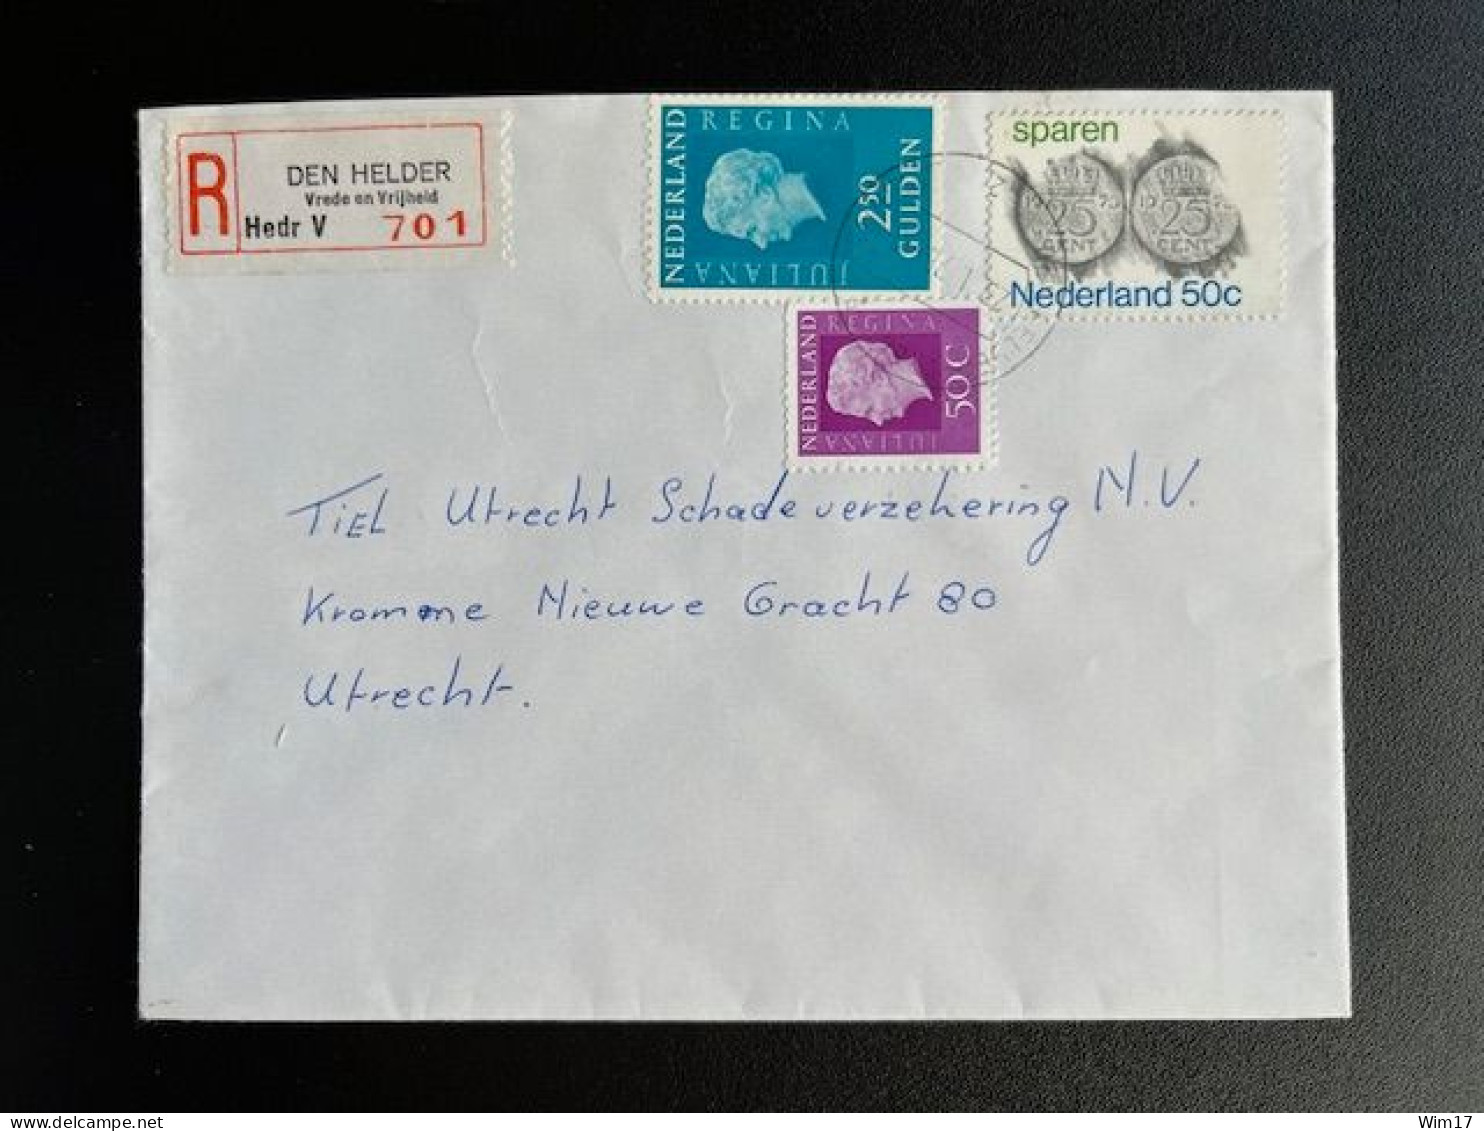 NETHERLANDS 1976 REGISTERED LETTER DEN HELDER VREDE EN VRIJHEIDPLEIN TO UTRECHT 23-01-1976 NEDERLAND AANGETEKEND - Briefe U. Dokumente